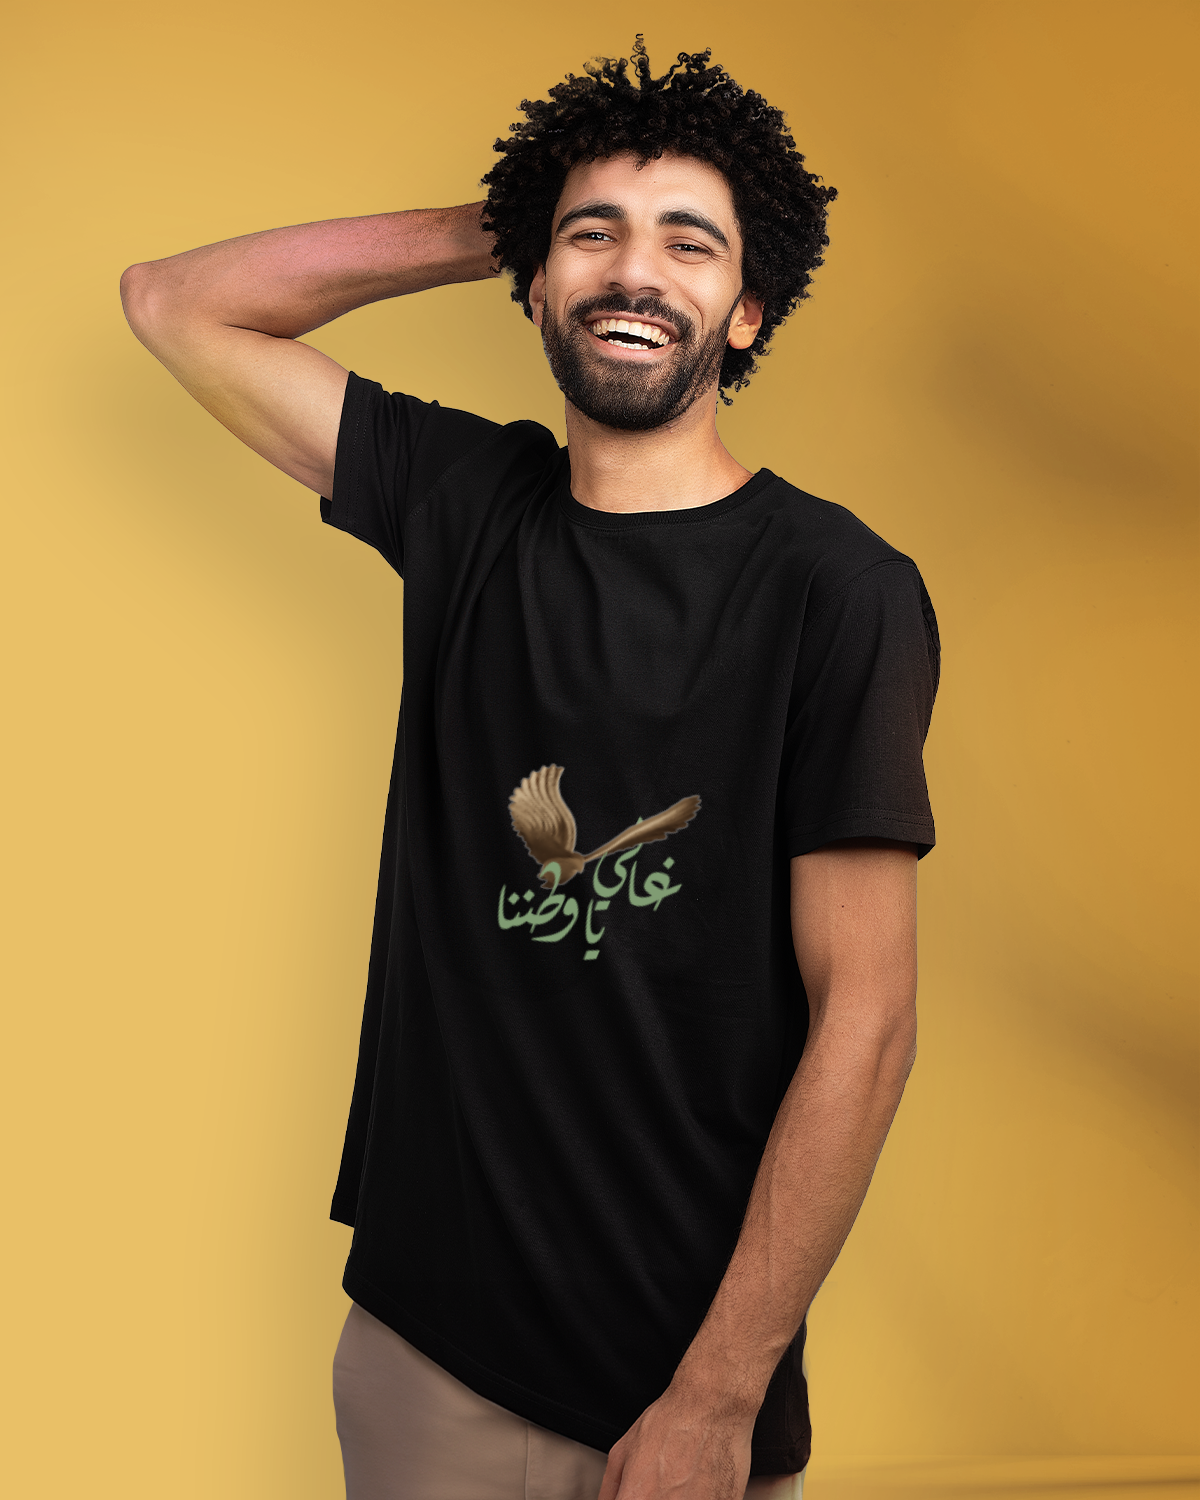 Men's Foundation Day T-shirt (Ghali ya Watanana)